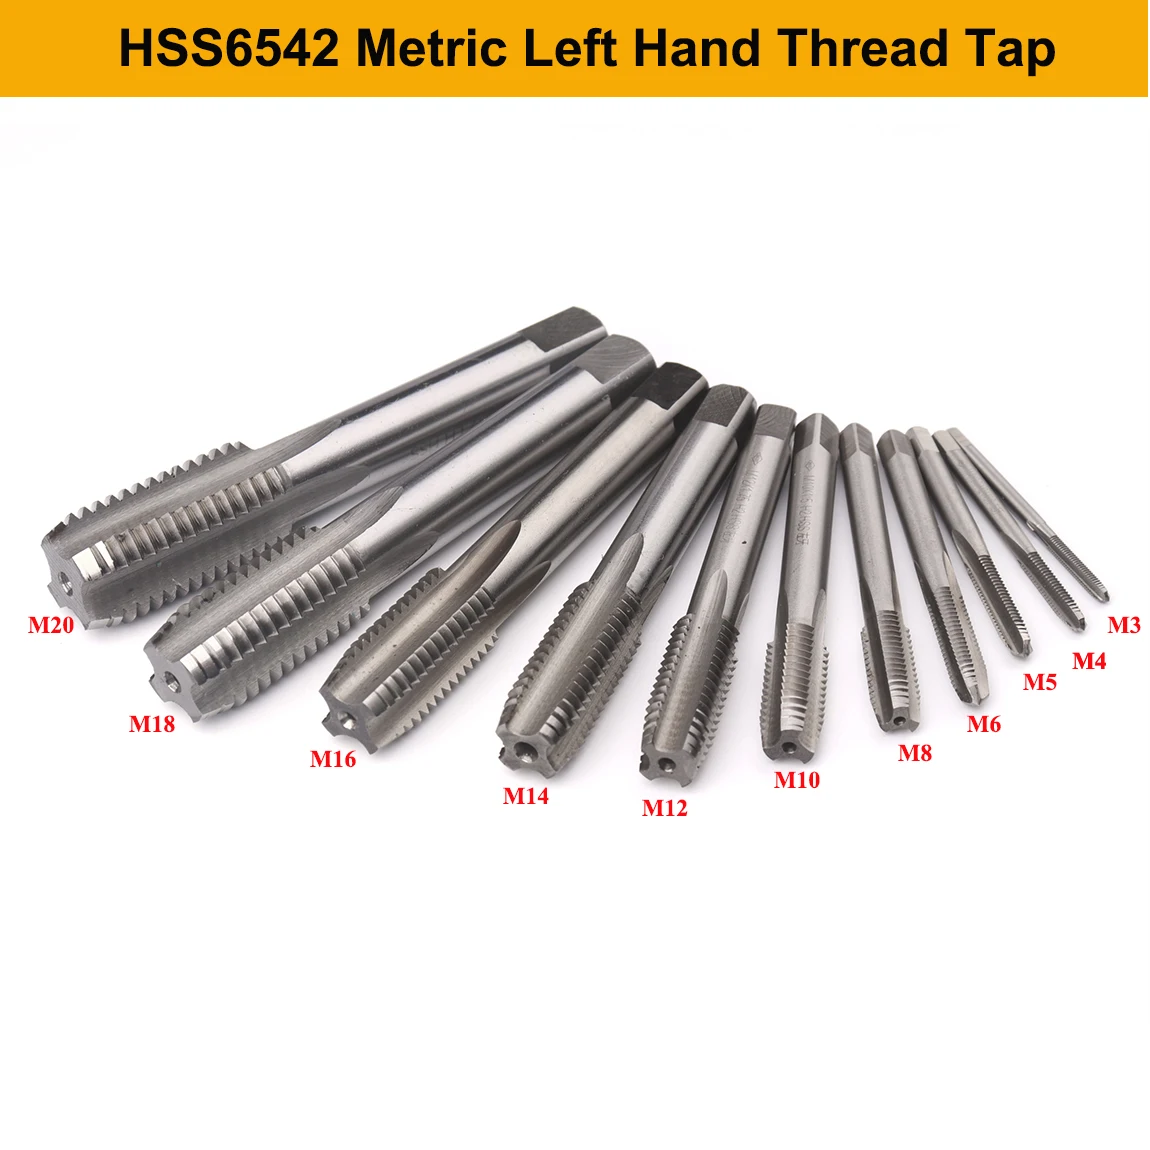 HSS6542 Left Hand Thread Tap M3 M4 M5 M6 M8 M10 M12 M14 M16 M18 M20 Metric Hand Tap Straight Flute Screw Thread Tap Drill Bit